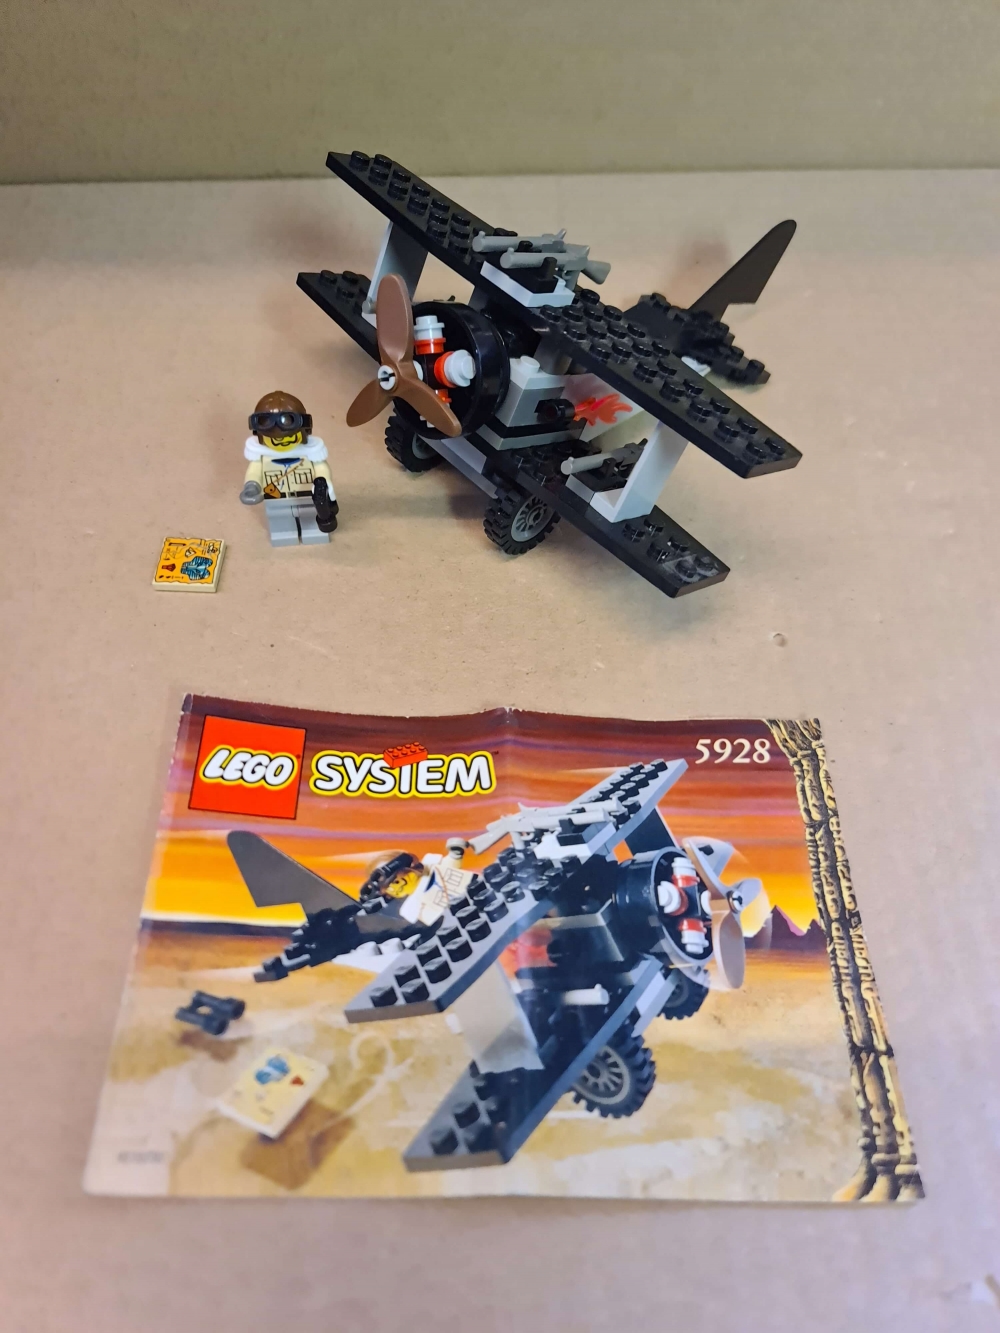 Sett 5928 fra Lego Adventurers : Desert serien.
Meget pent.
Komplett med manual.